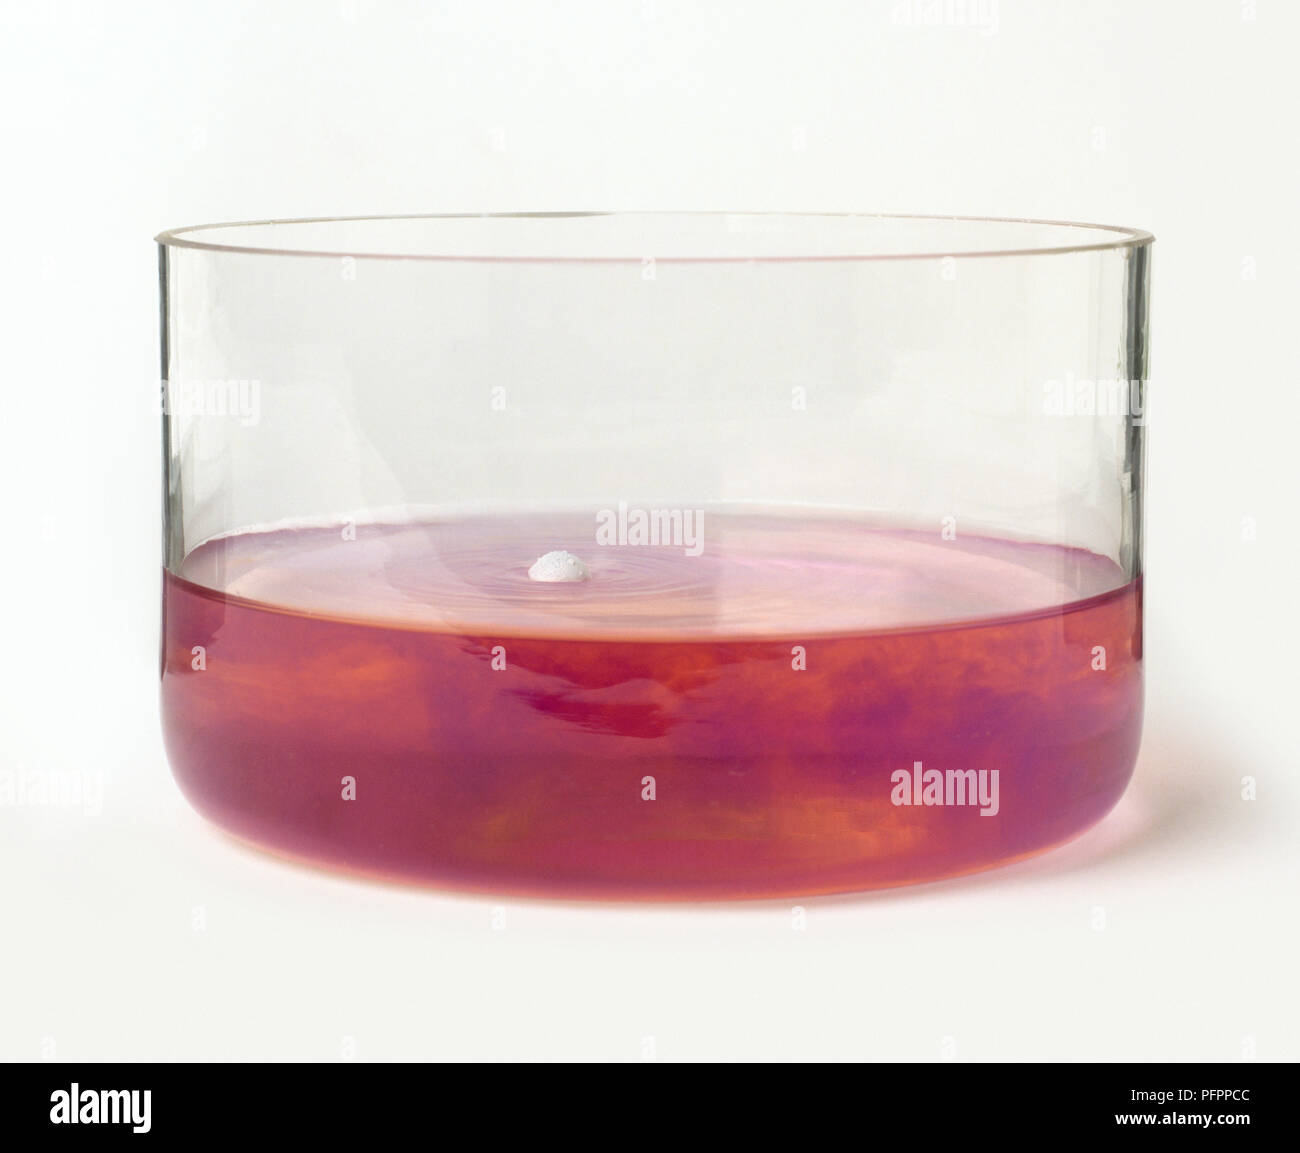 Sodio metallico in recipiente di vetro di colore rosso al tornasole acqua producendo idrossido di sodio e idrogeno, close-up Foto Stock